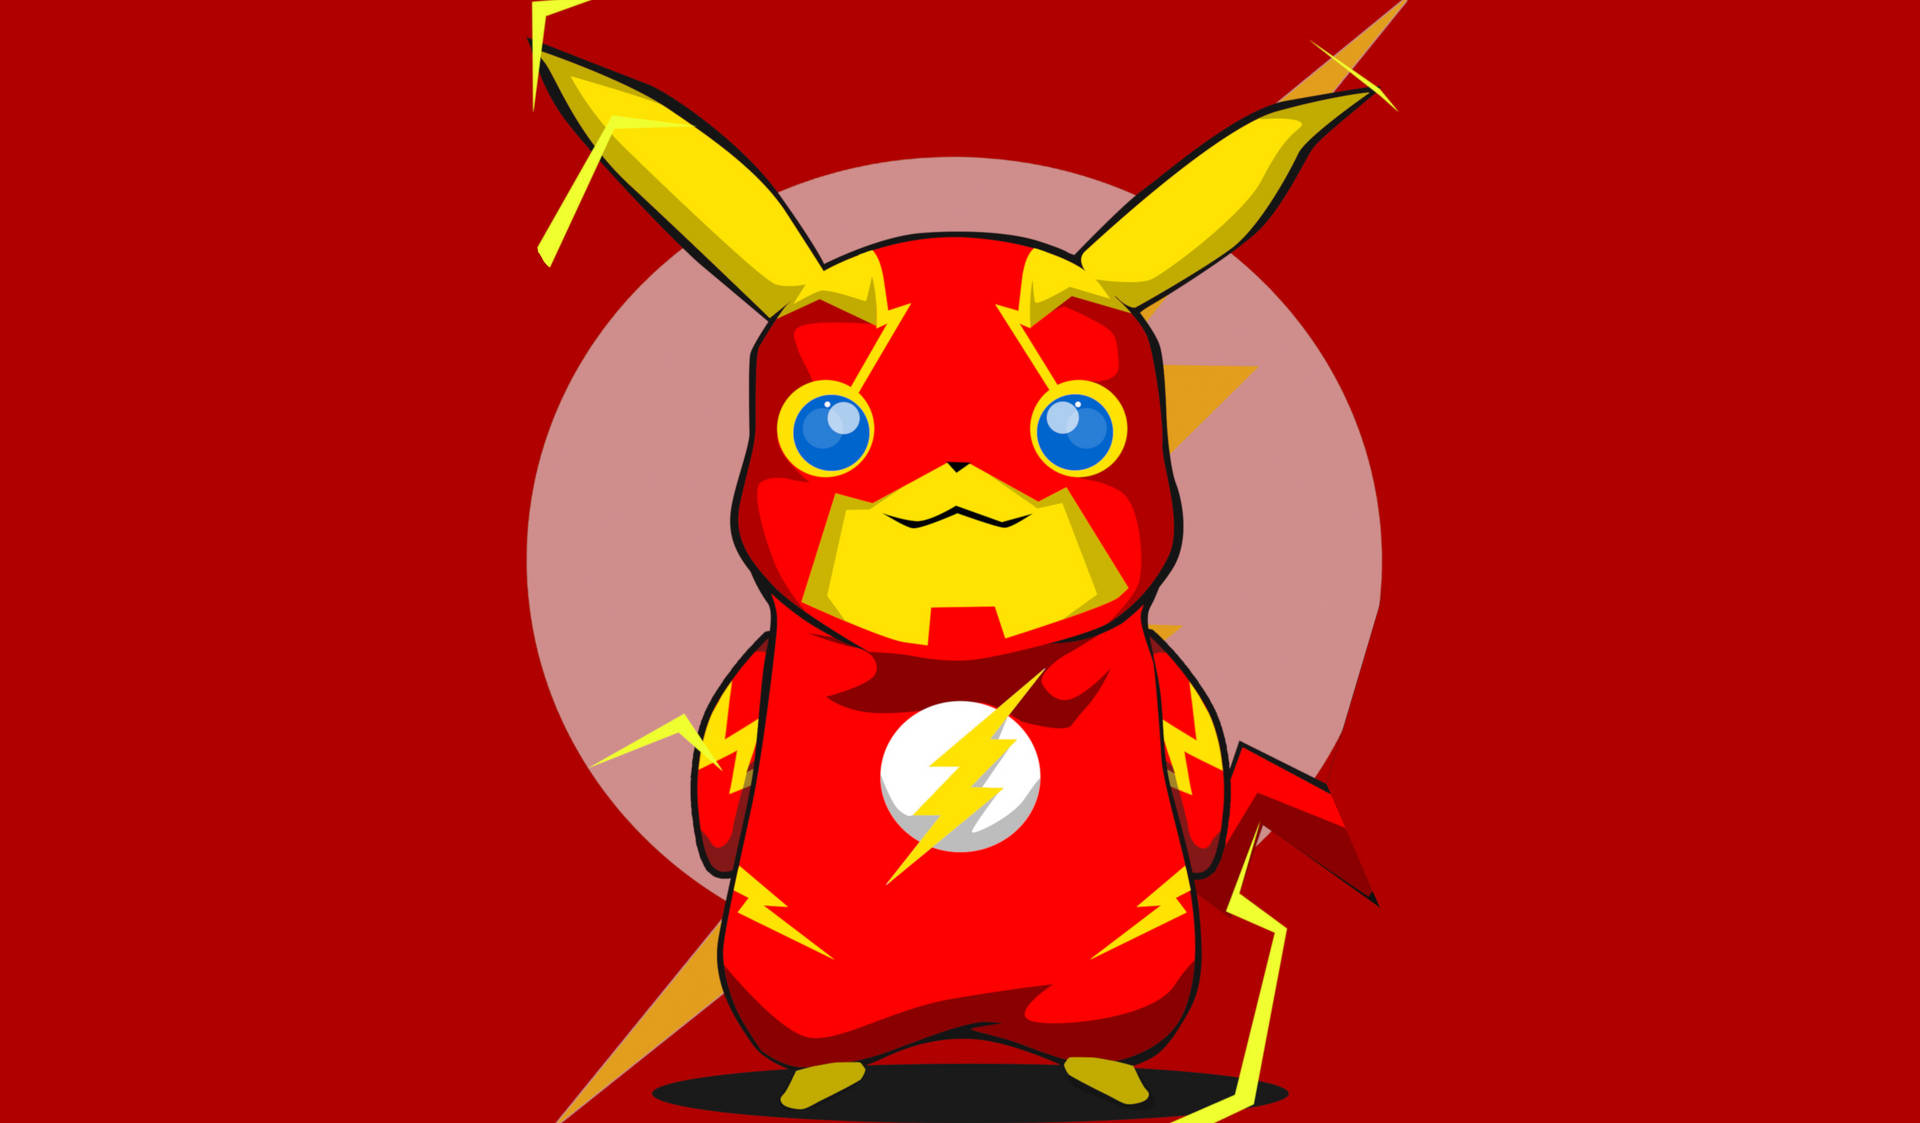 Cute Pikachu In Flash Costume